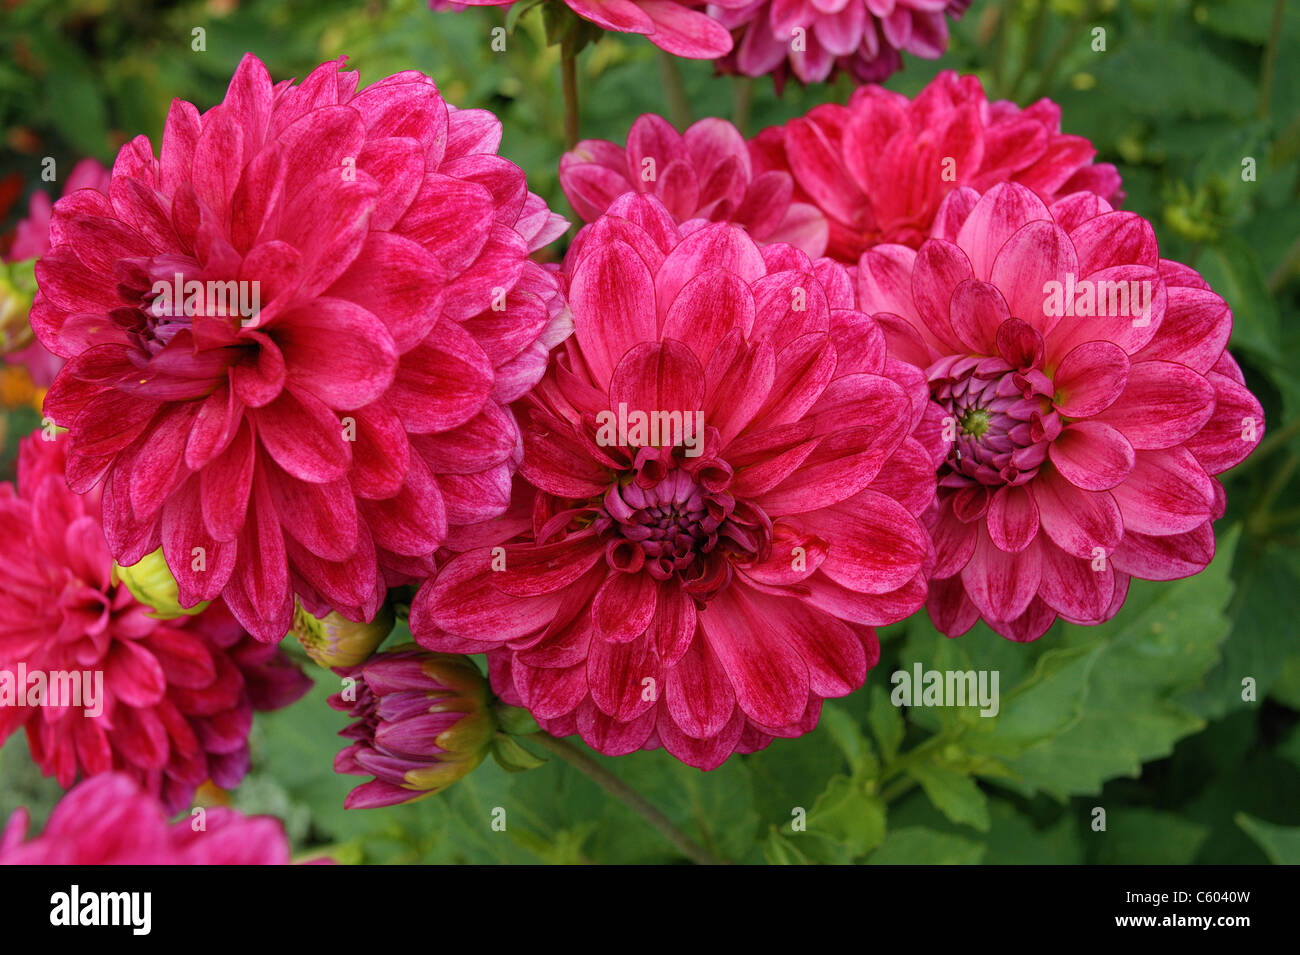 Cluster of red dahlias dahlia close up Stock Photo